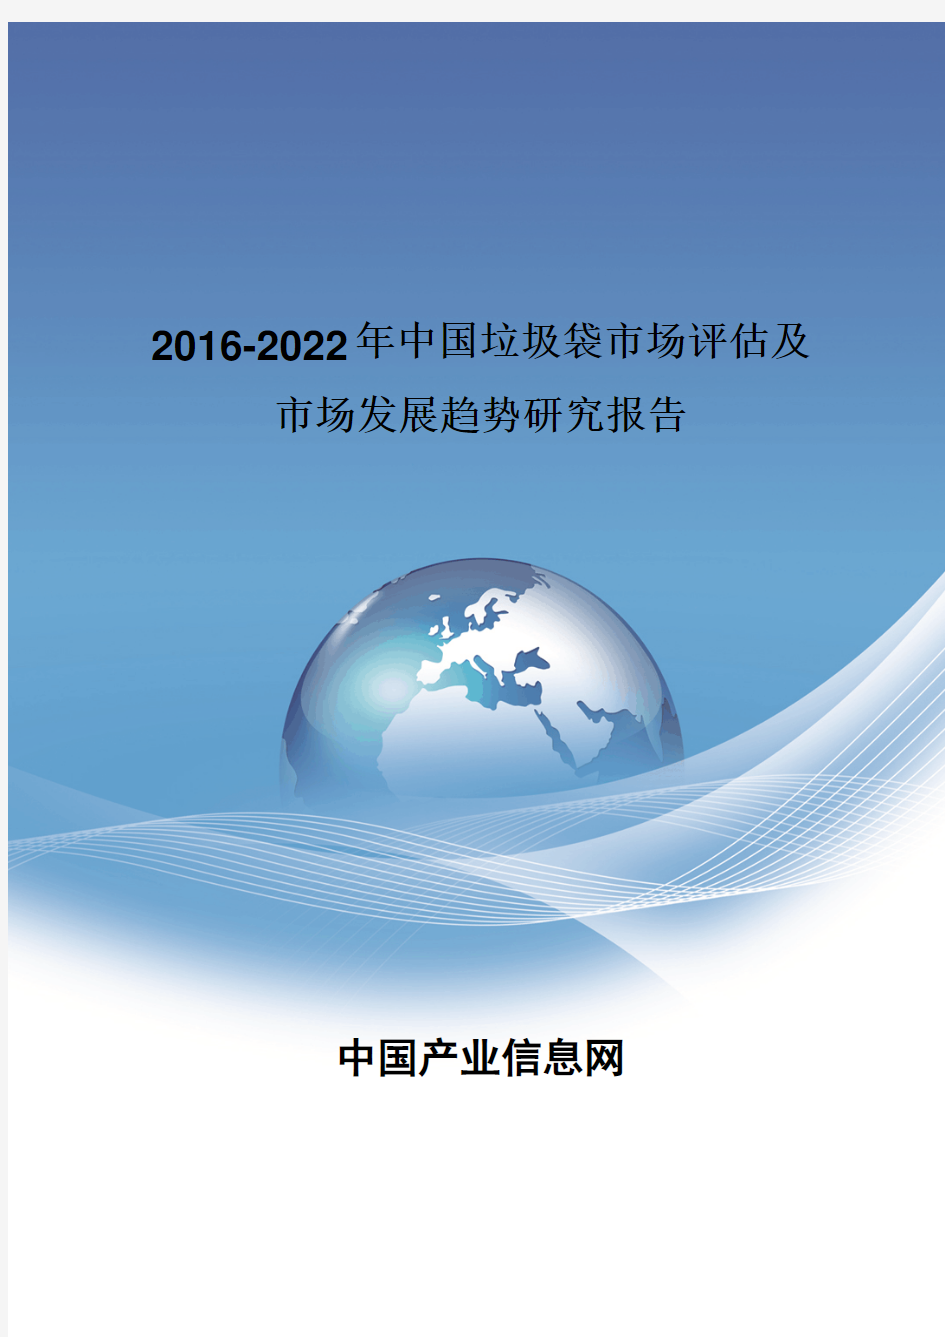 2016-2022年中国垃圾袋市场评估报告